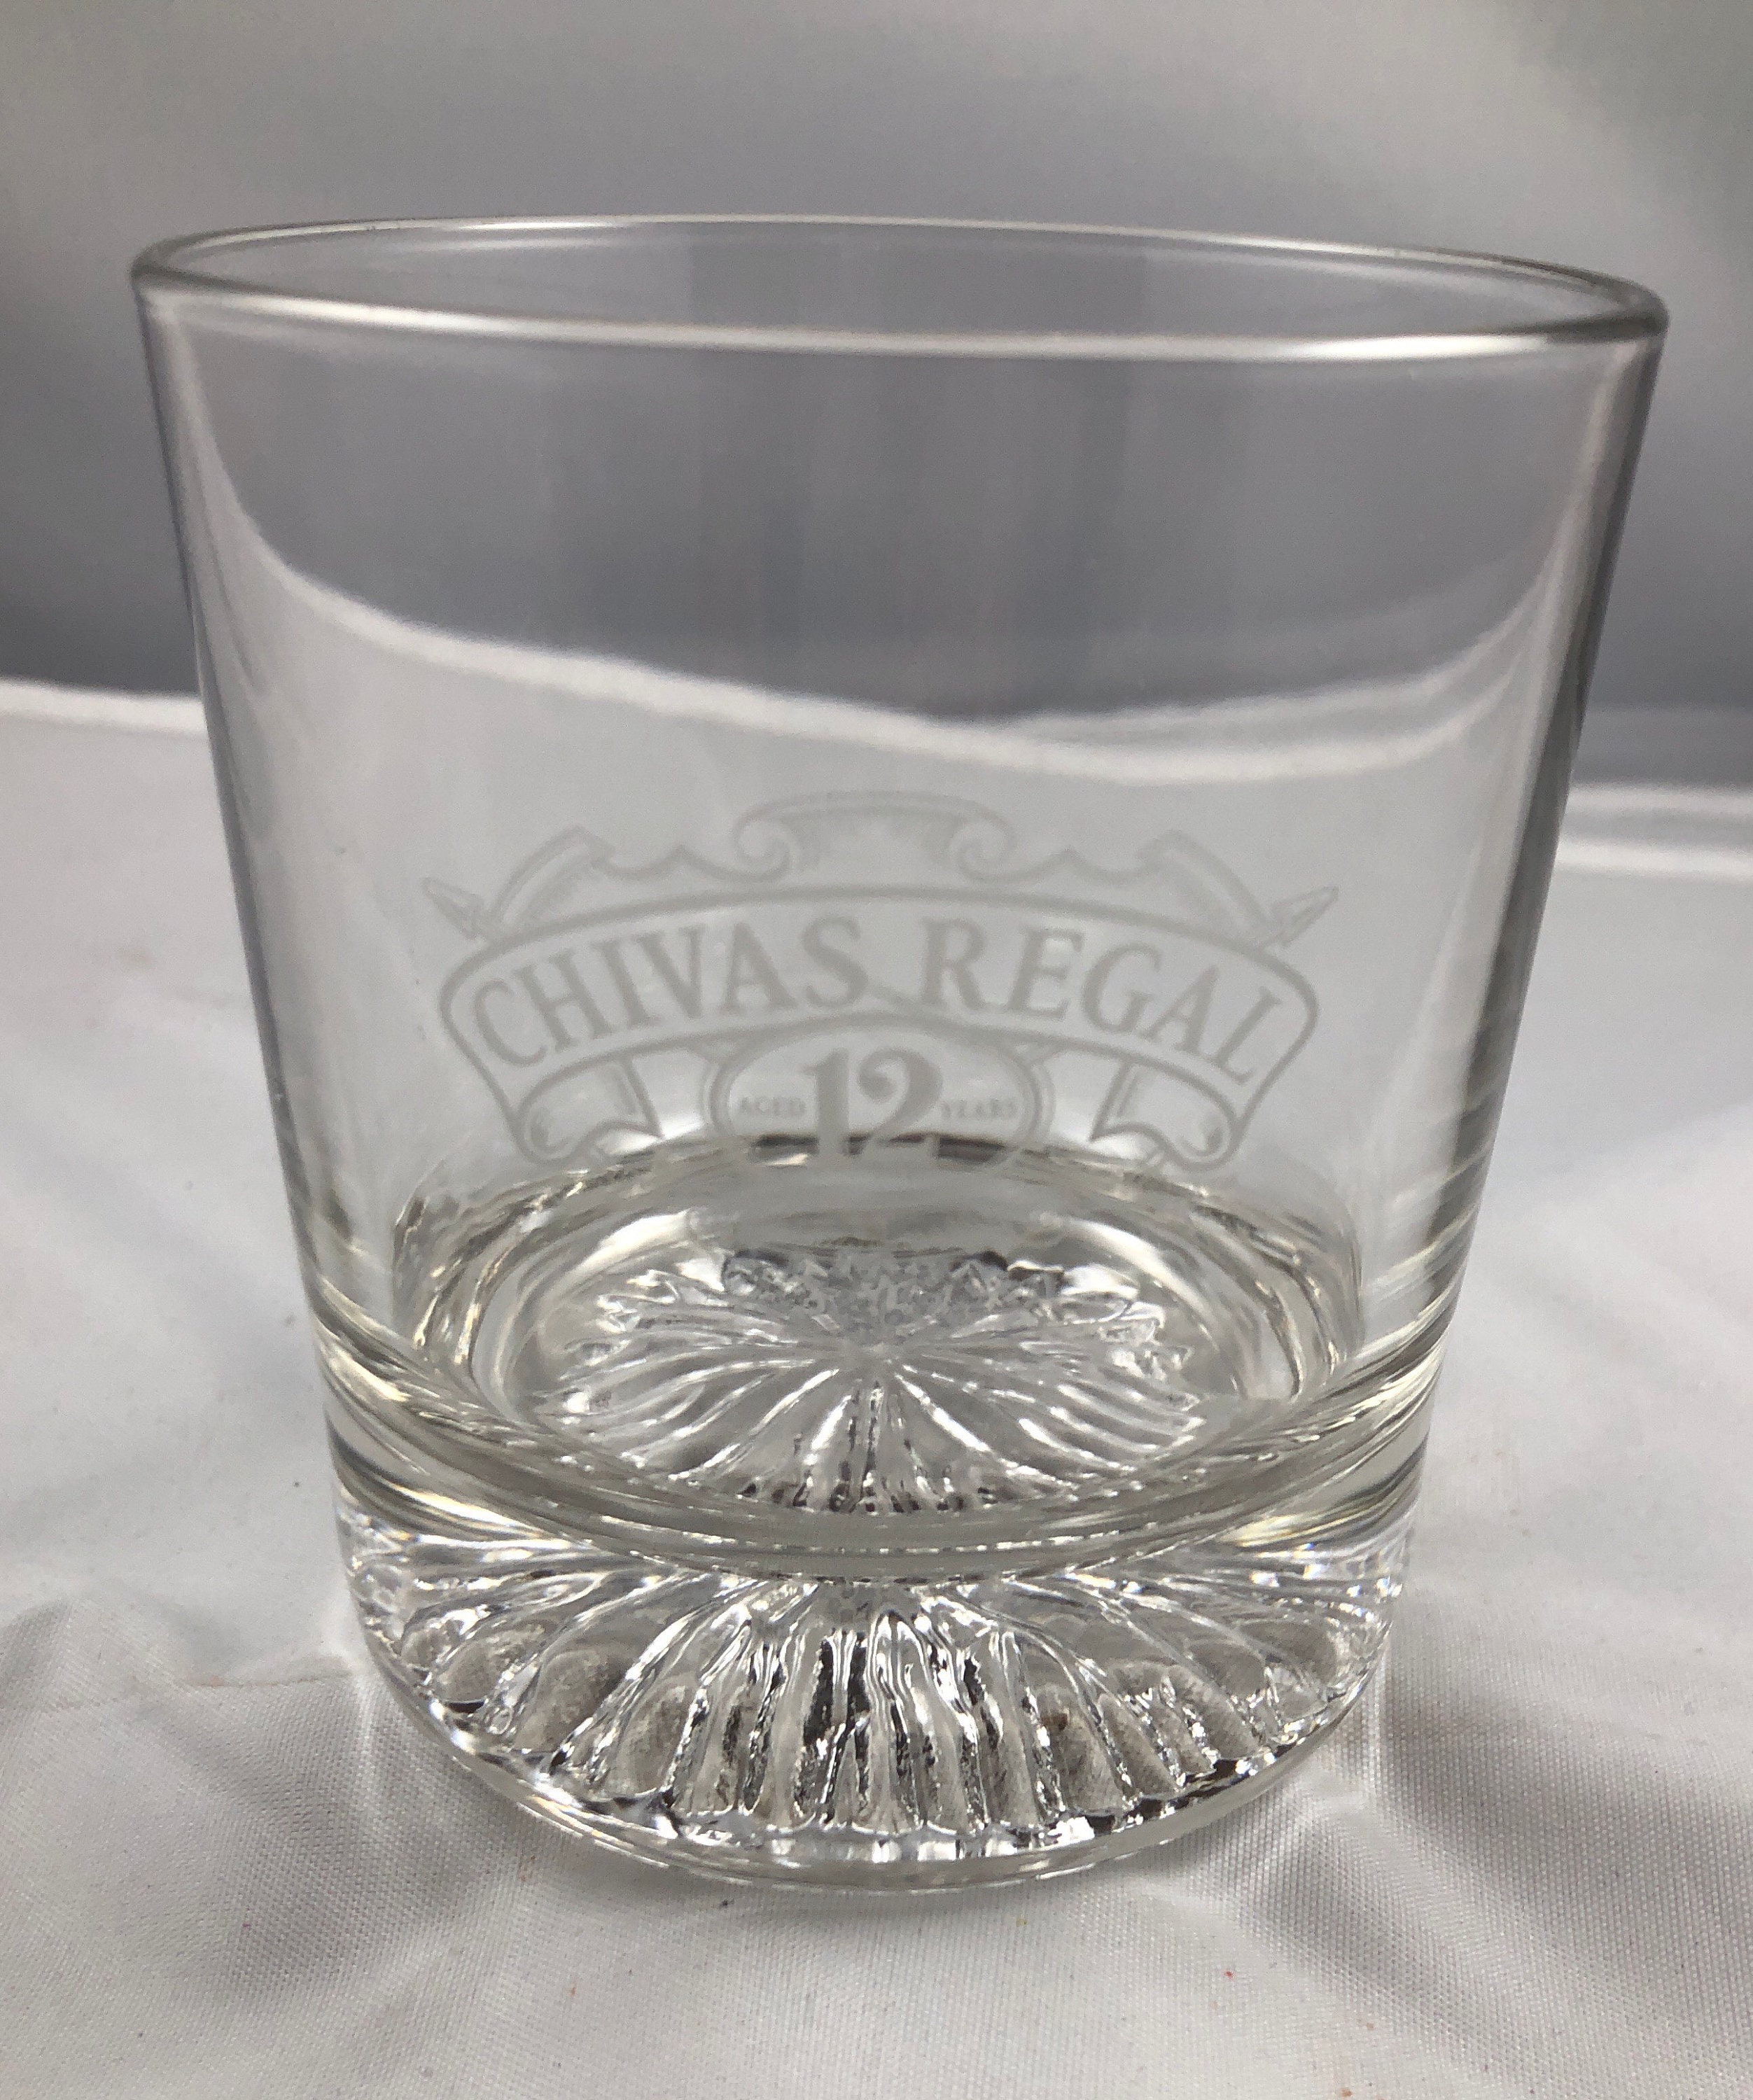 Chivas Regal 12 Year Scotch Whisky Glass - Etsy